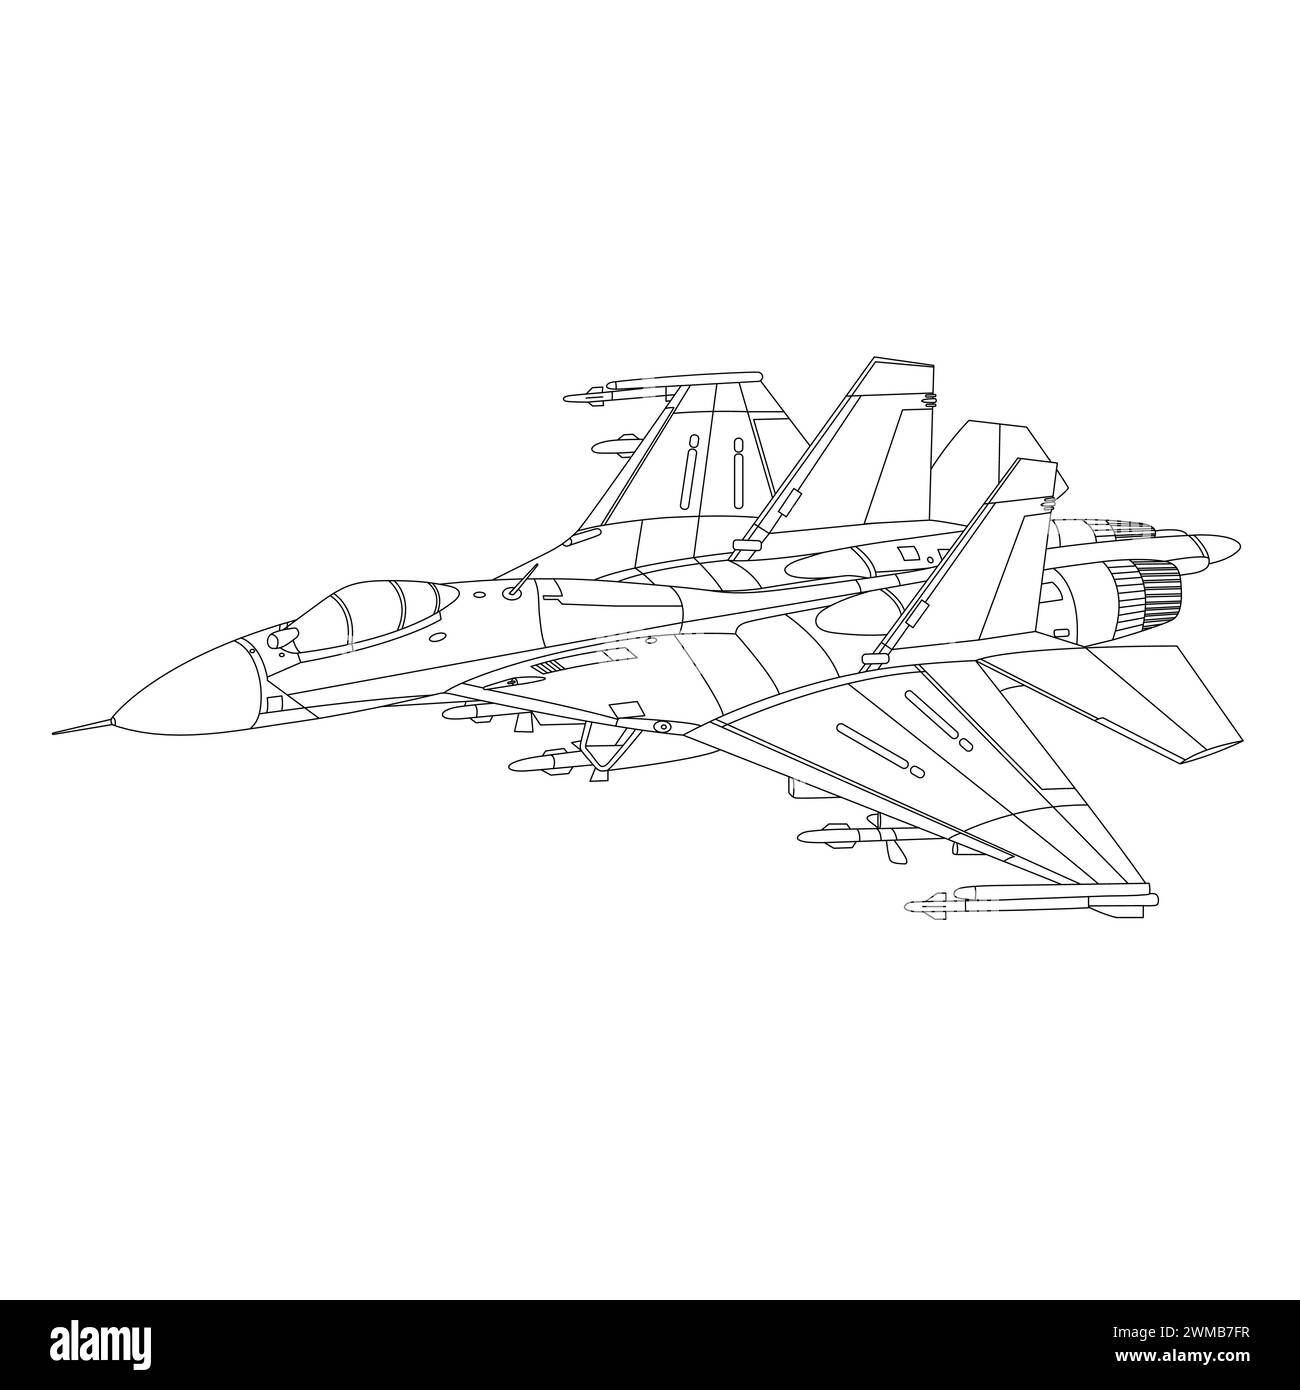 Illustrazione del profilo dell'aeromobile Sukhoi su-27. Libro da colorare Fighter Jet Su27 Flanker per bambini e adulti. Aereo militare isolato su sfondo bianco Illustrazione Vettoriale